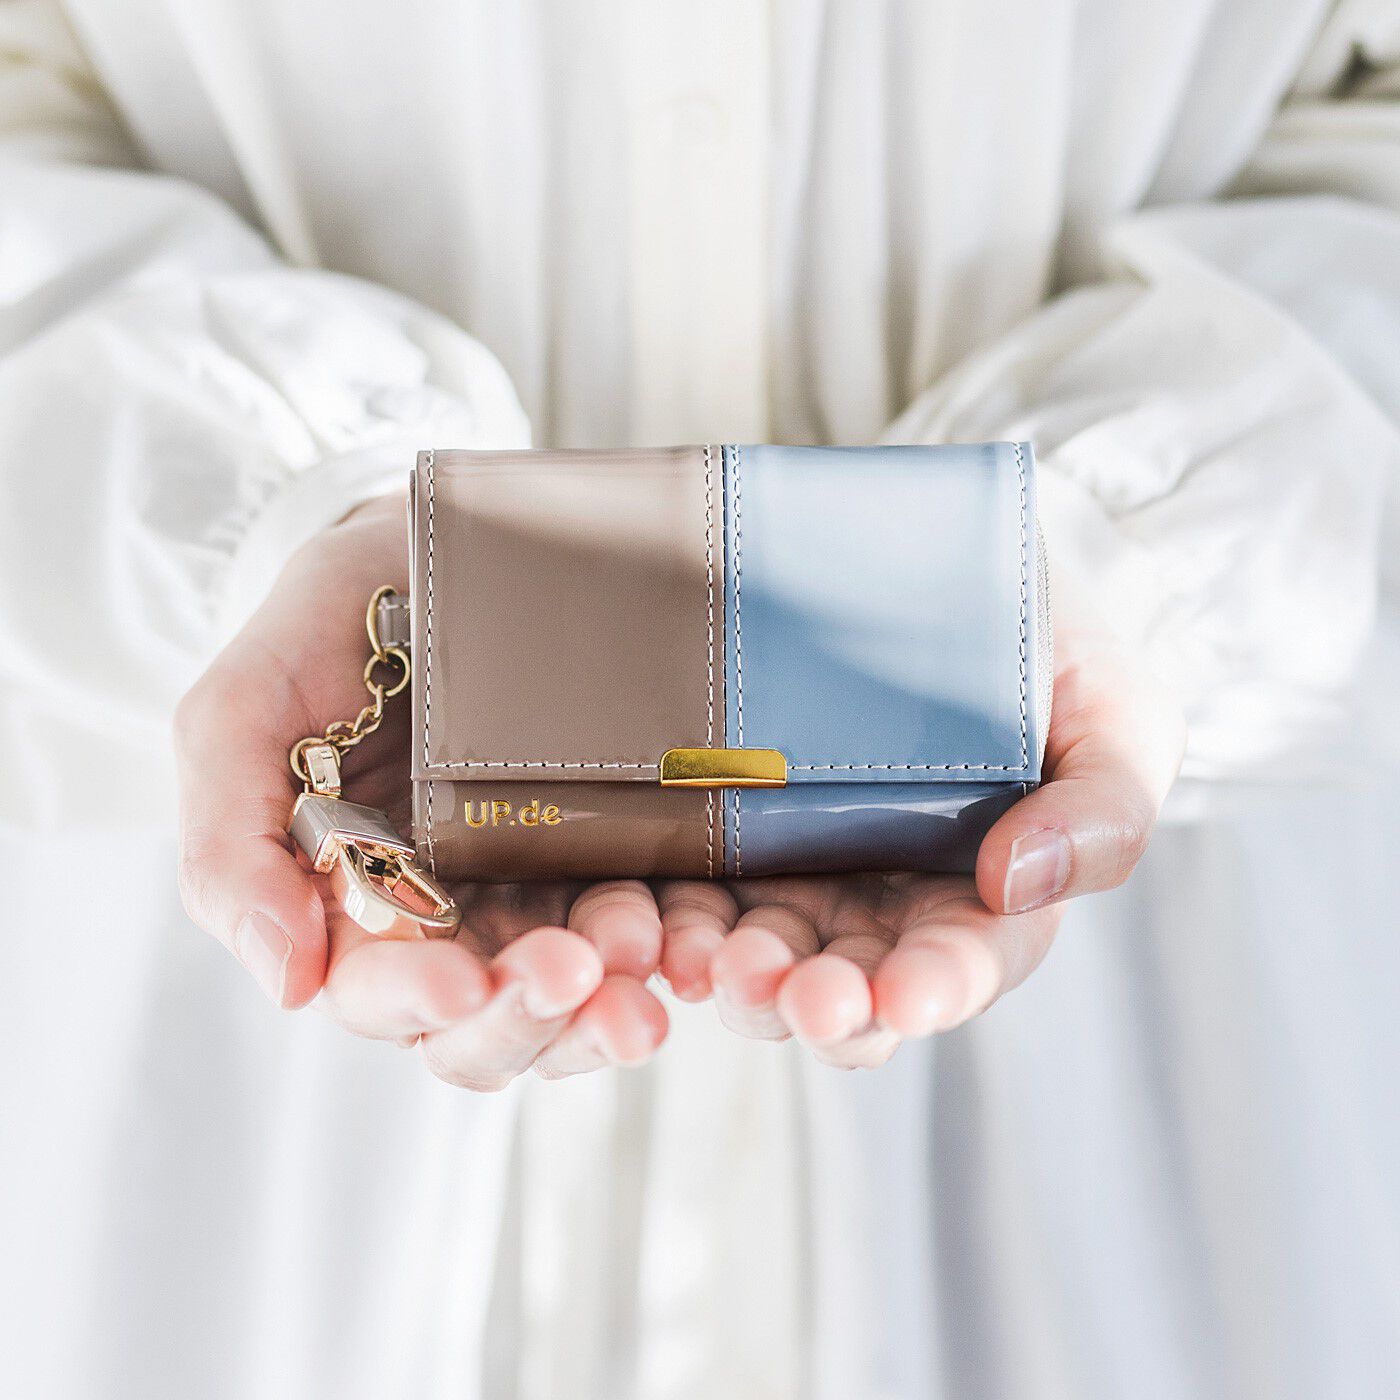 フェリシモの雑貨 クラソ|UP.de　キーリング付き 必要なものがきちんと収まる 手のひらサイズの大人エナメル財布の会